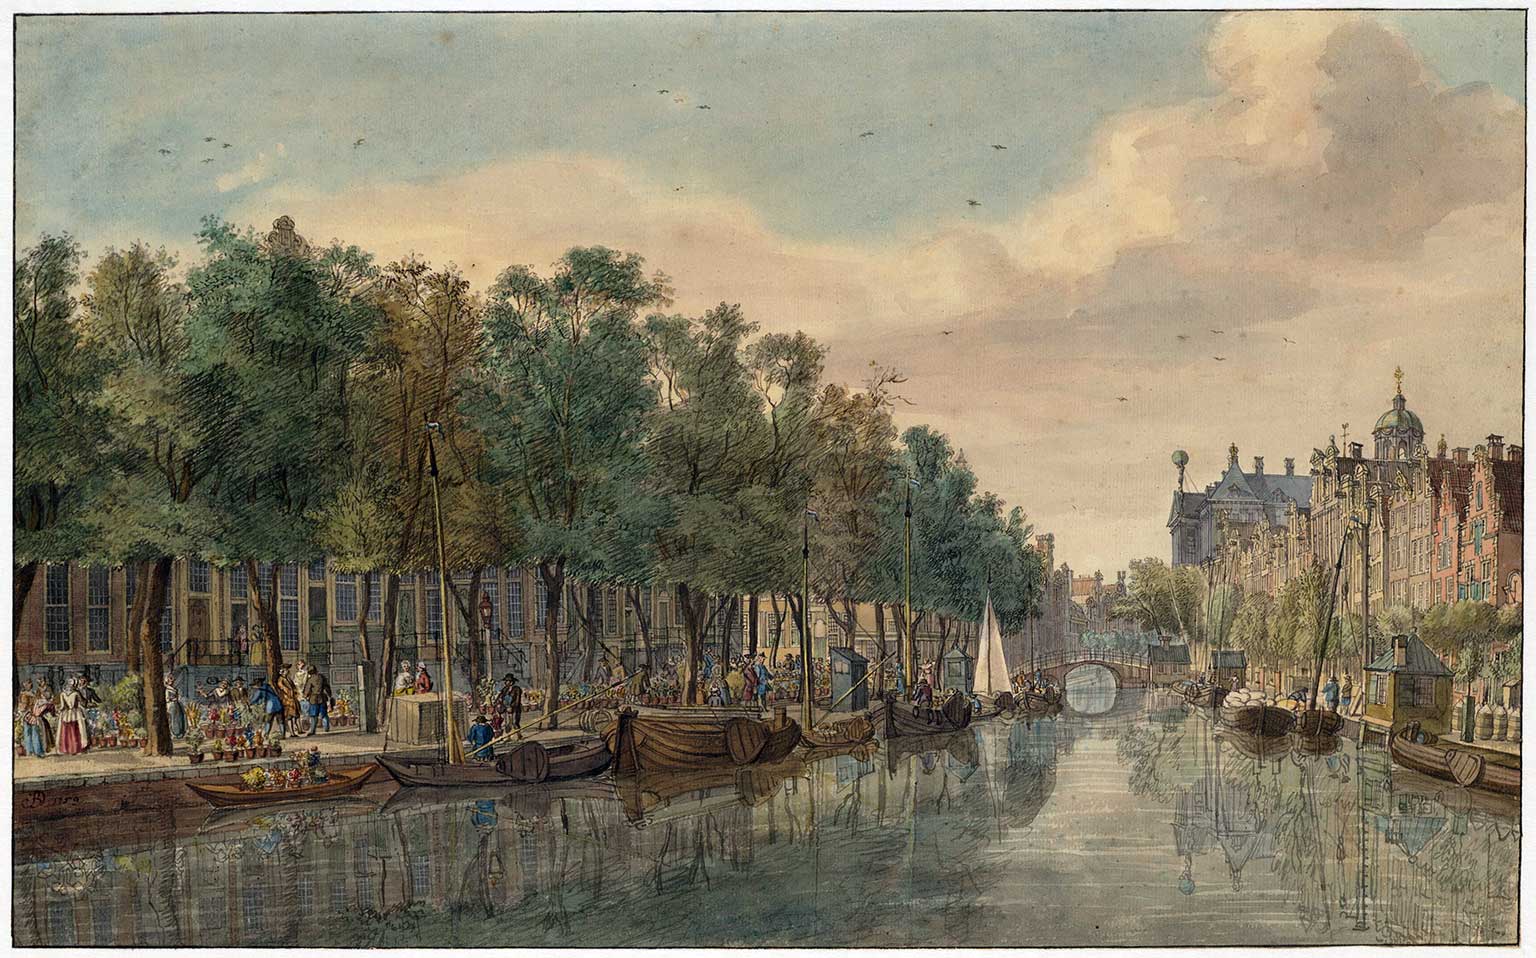 Bloemmarkt on Nieuwezijds Voorburgwal, Amsterdam in 1759, drawing by Jan de Beijer